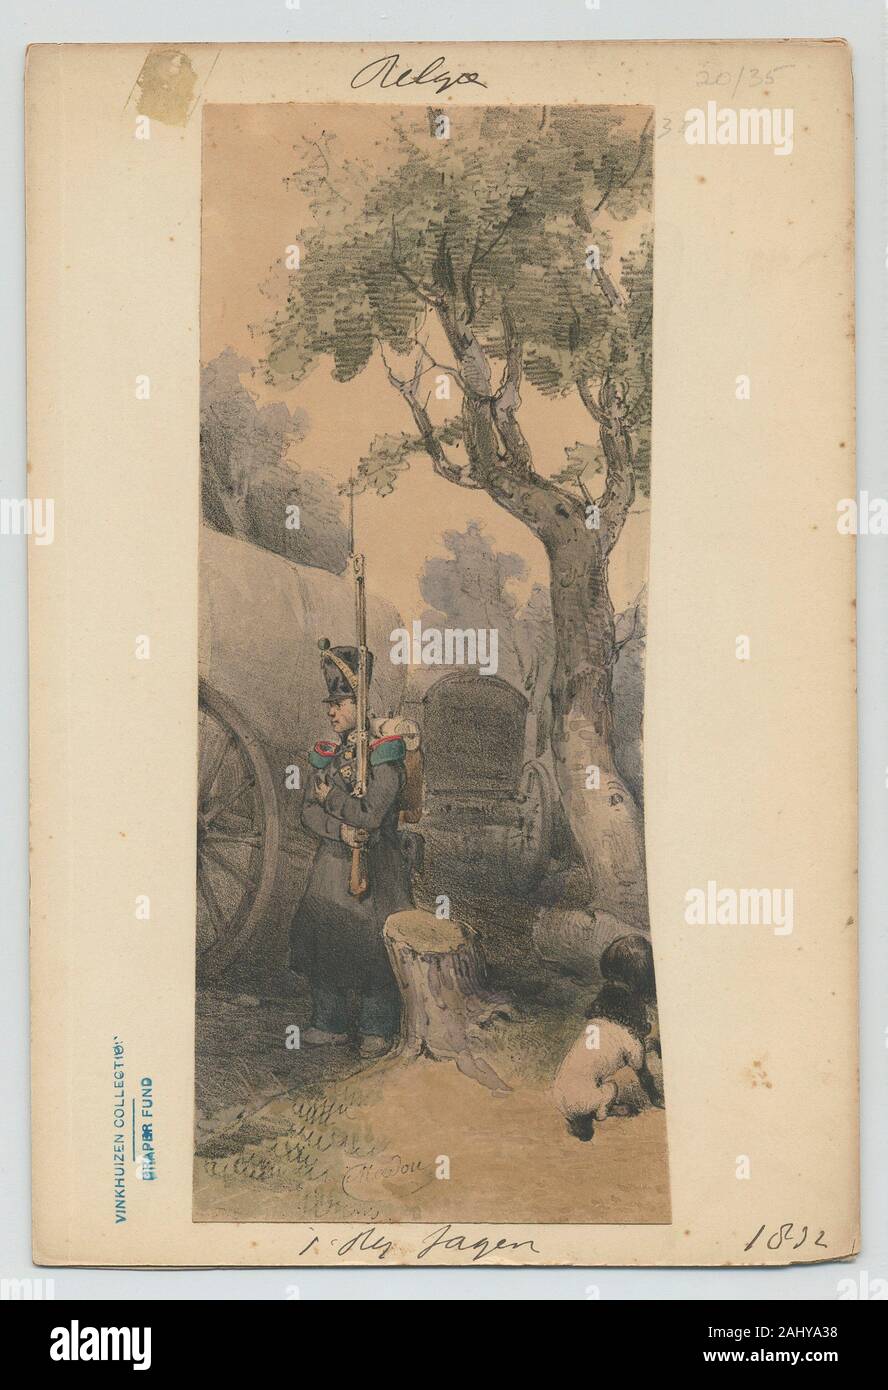 1' Jagen reggimento. Vinkhuijzen, Hendrik Jacobus (collettore) Madou, Jean-Baptiste (1796-1877) (litografo). La collezione Vinkhuijzen di militari Foto Stock